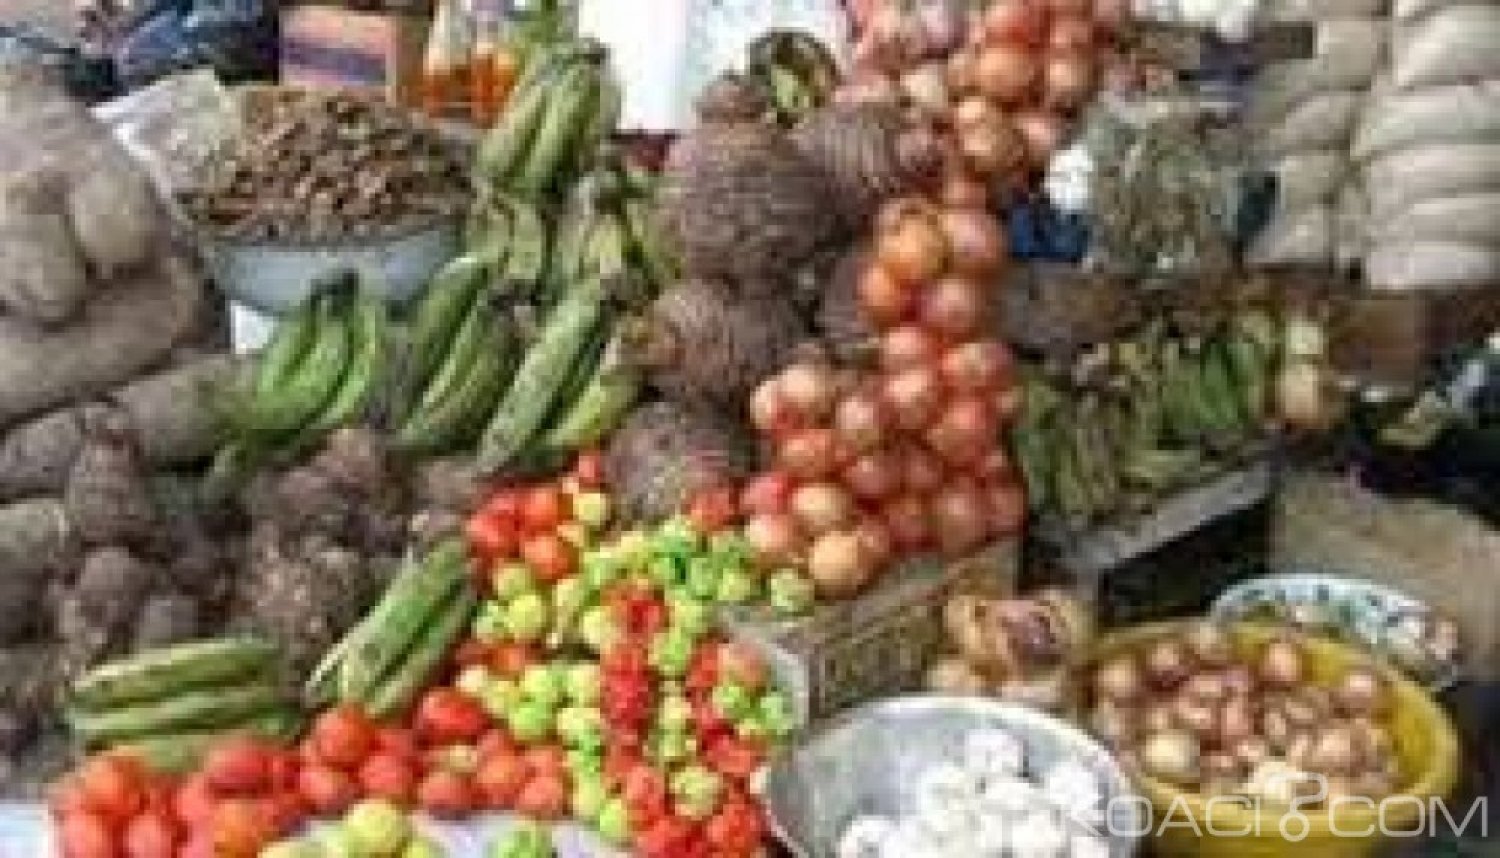 Côte d'Ivoire : Sécurité alimentaire, un projet d'appui au secteur vivrier financé par l'UE  à  hauteur de 12 milliards de FCFA annoncé